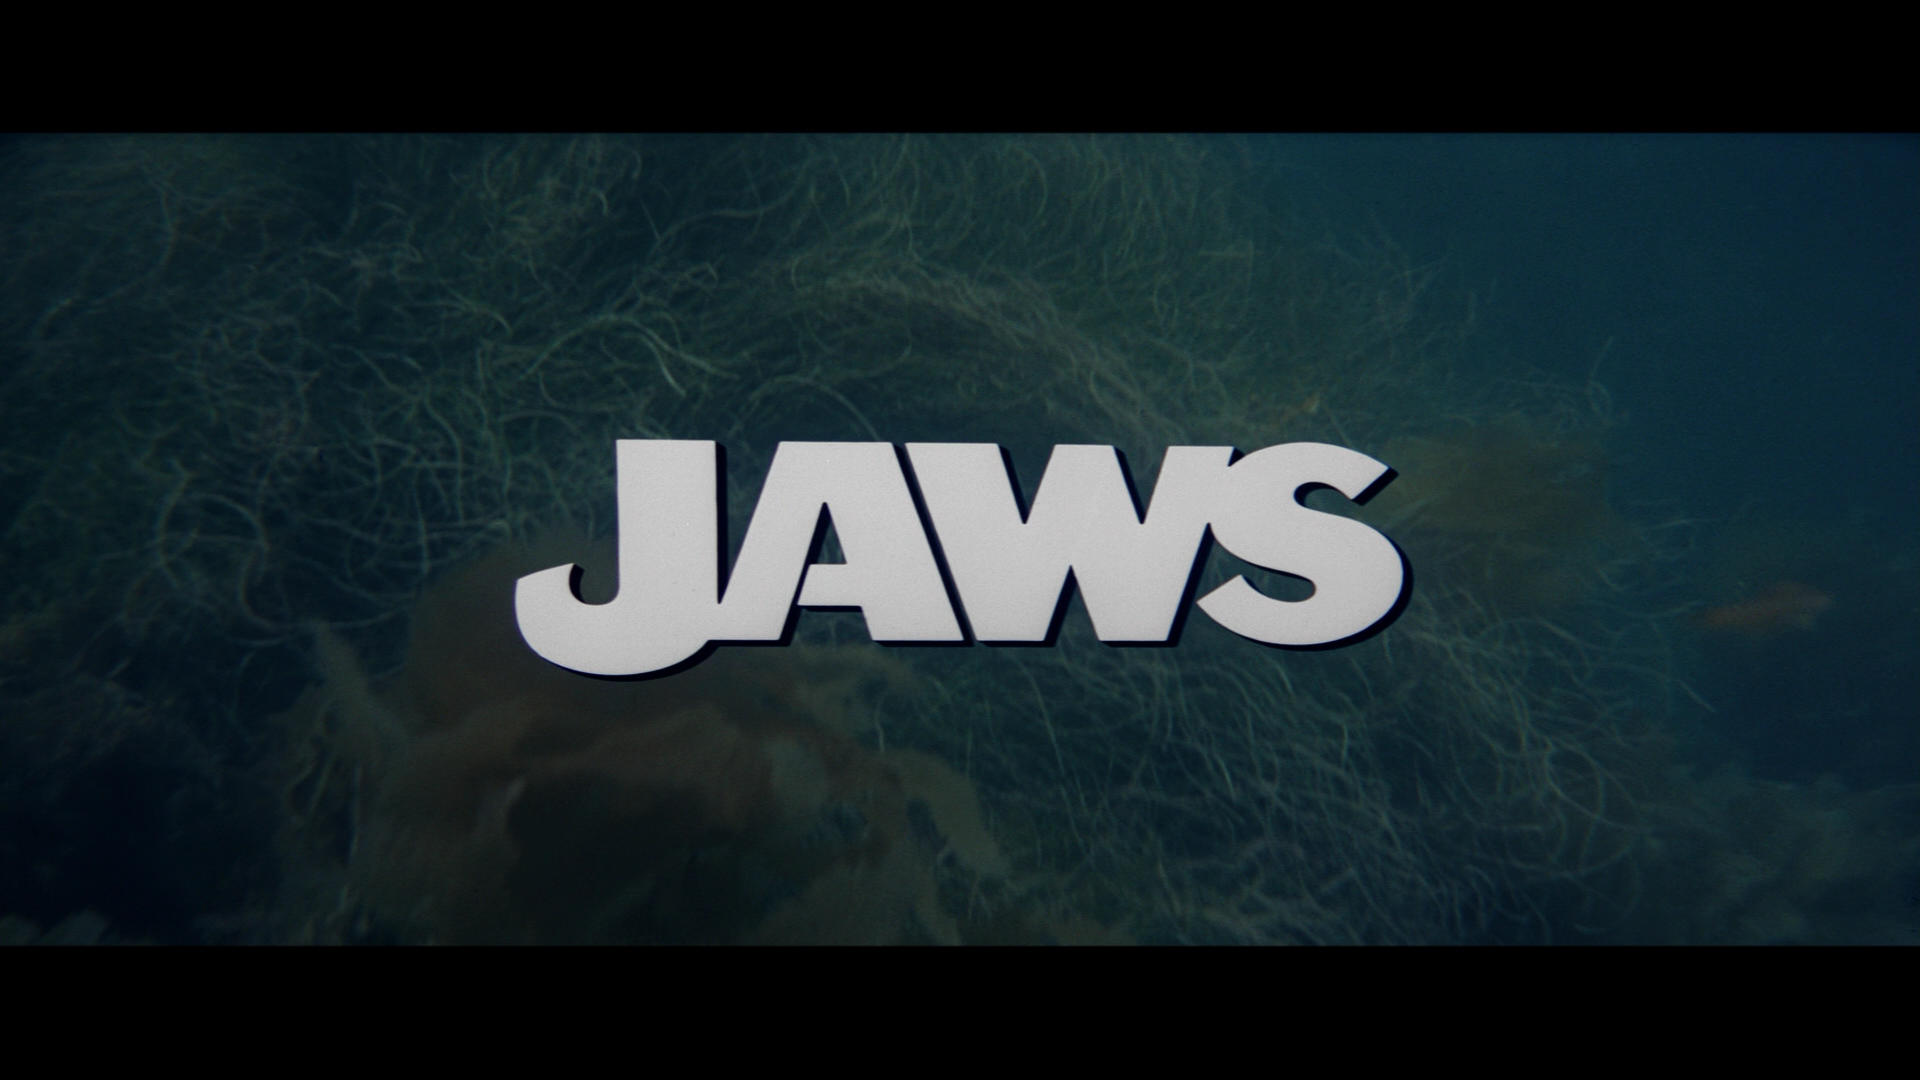 Jaws 2 Wallpaper Widescreen for Pinterest 1920x1080